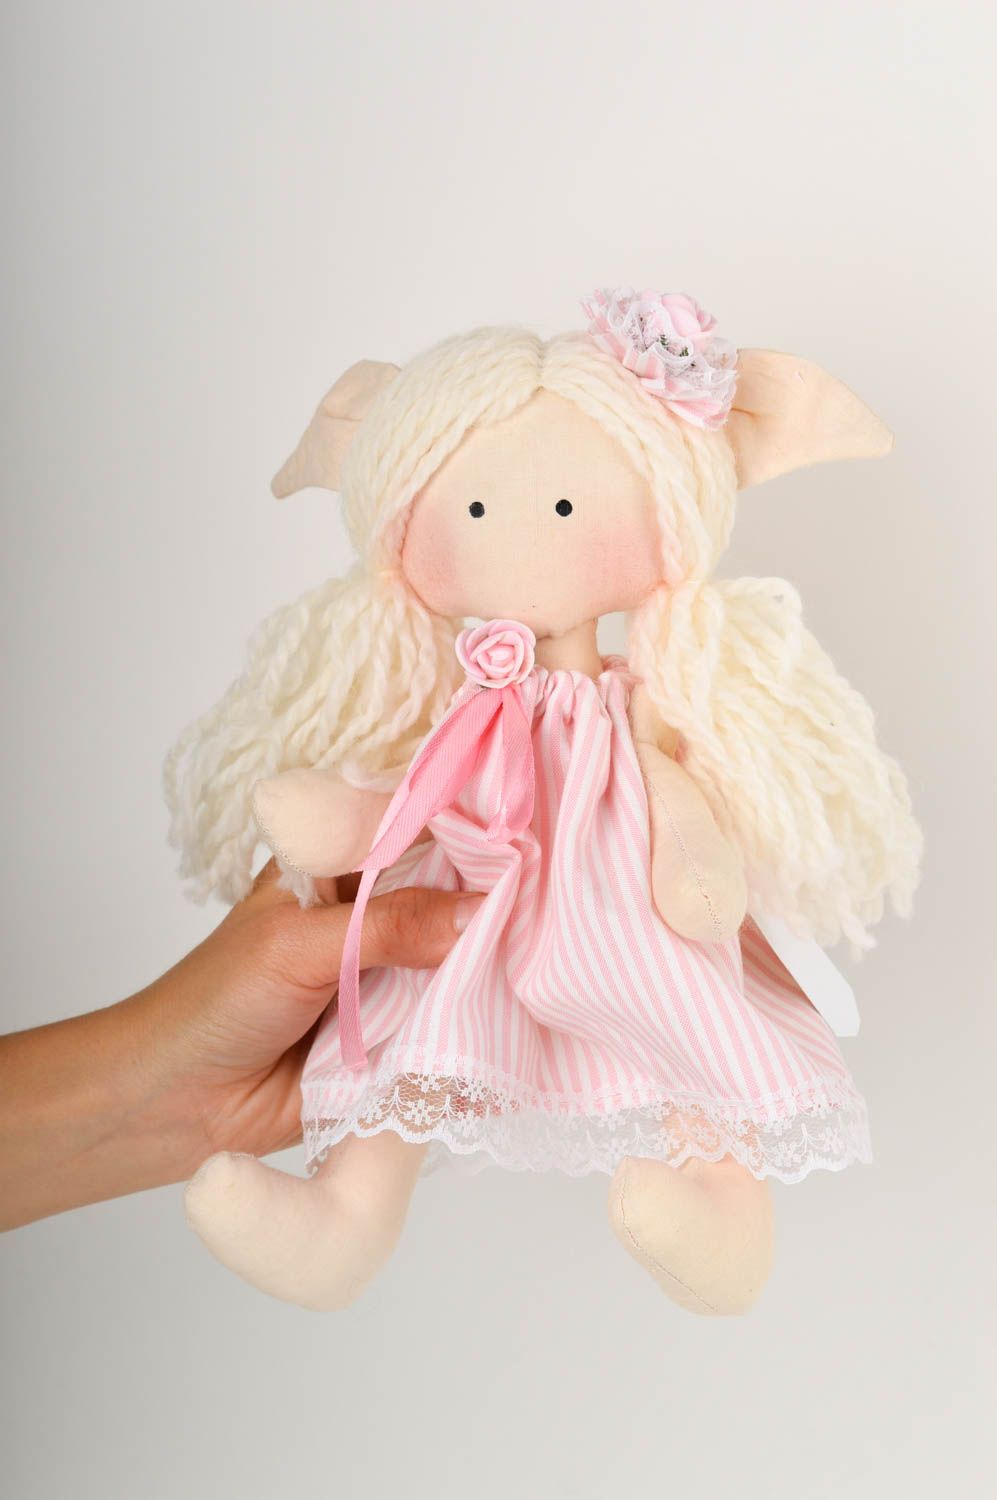 Кукла ручной работы кукла из ткани розовая мягкая кукла авторского дизайна фото 2